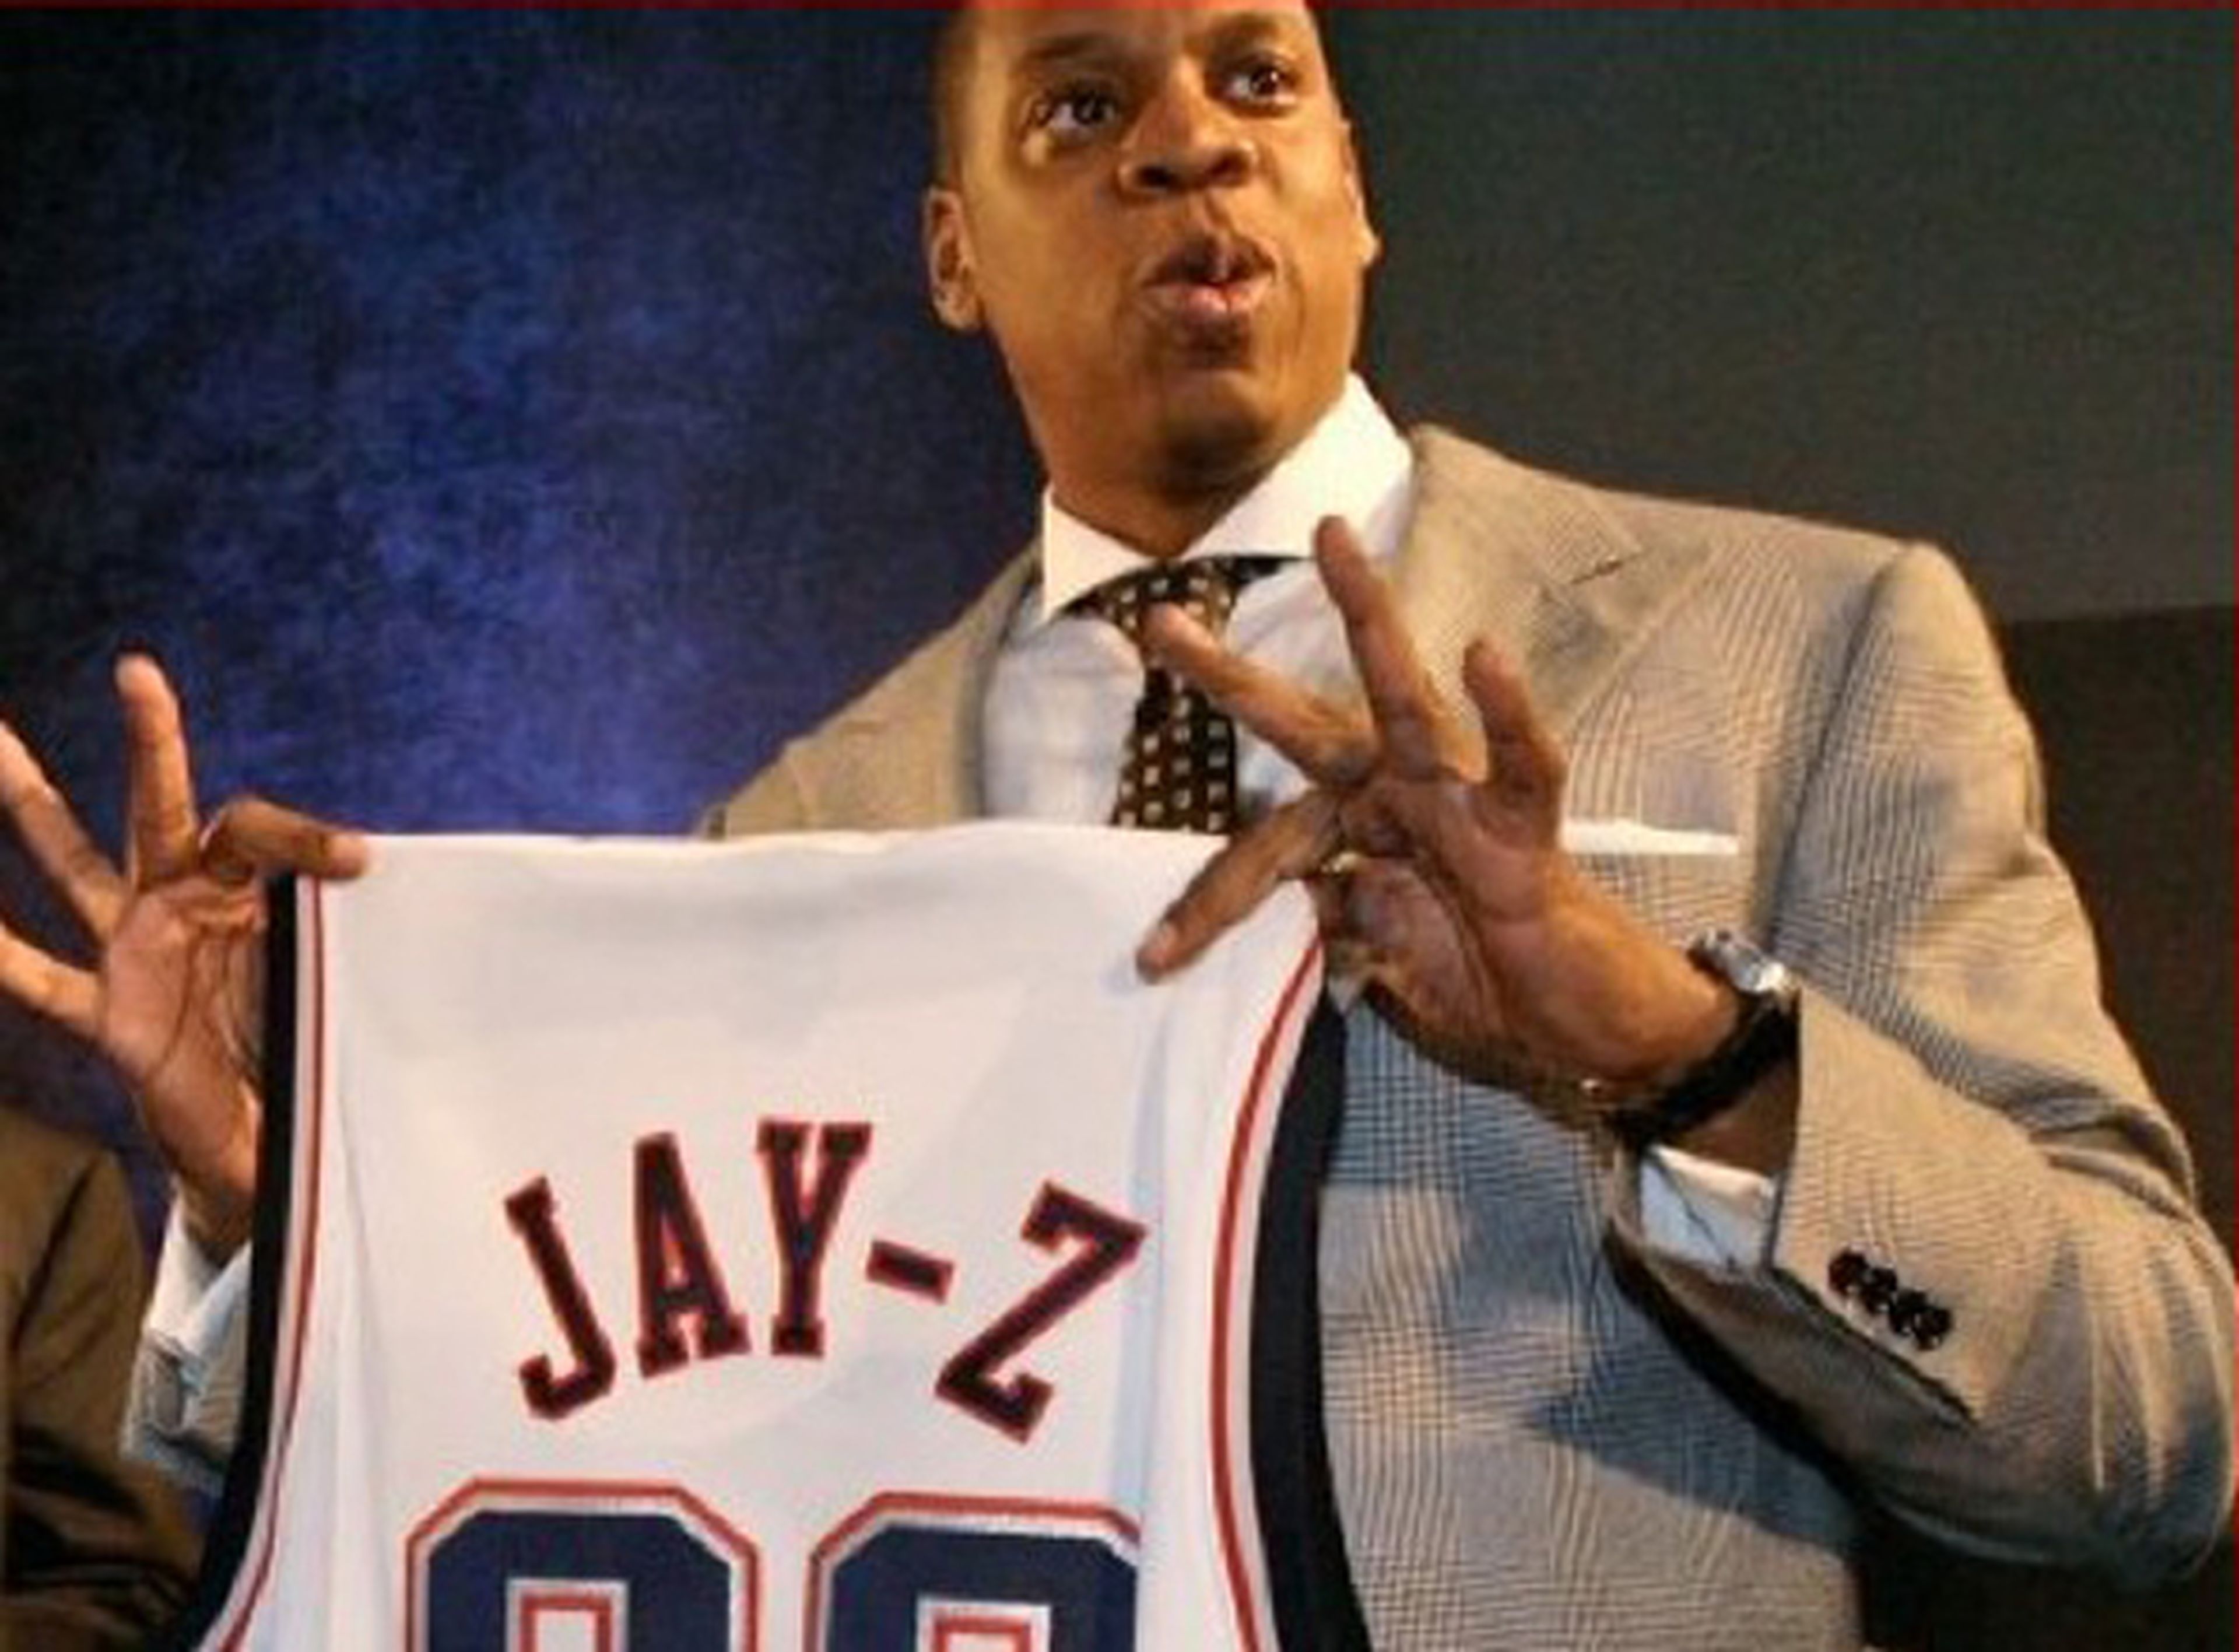 El rapero Jay-Z nuevo productor de NBA 2K13